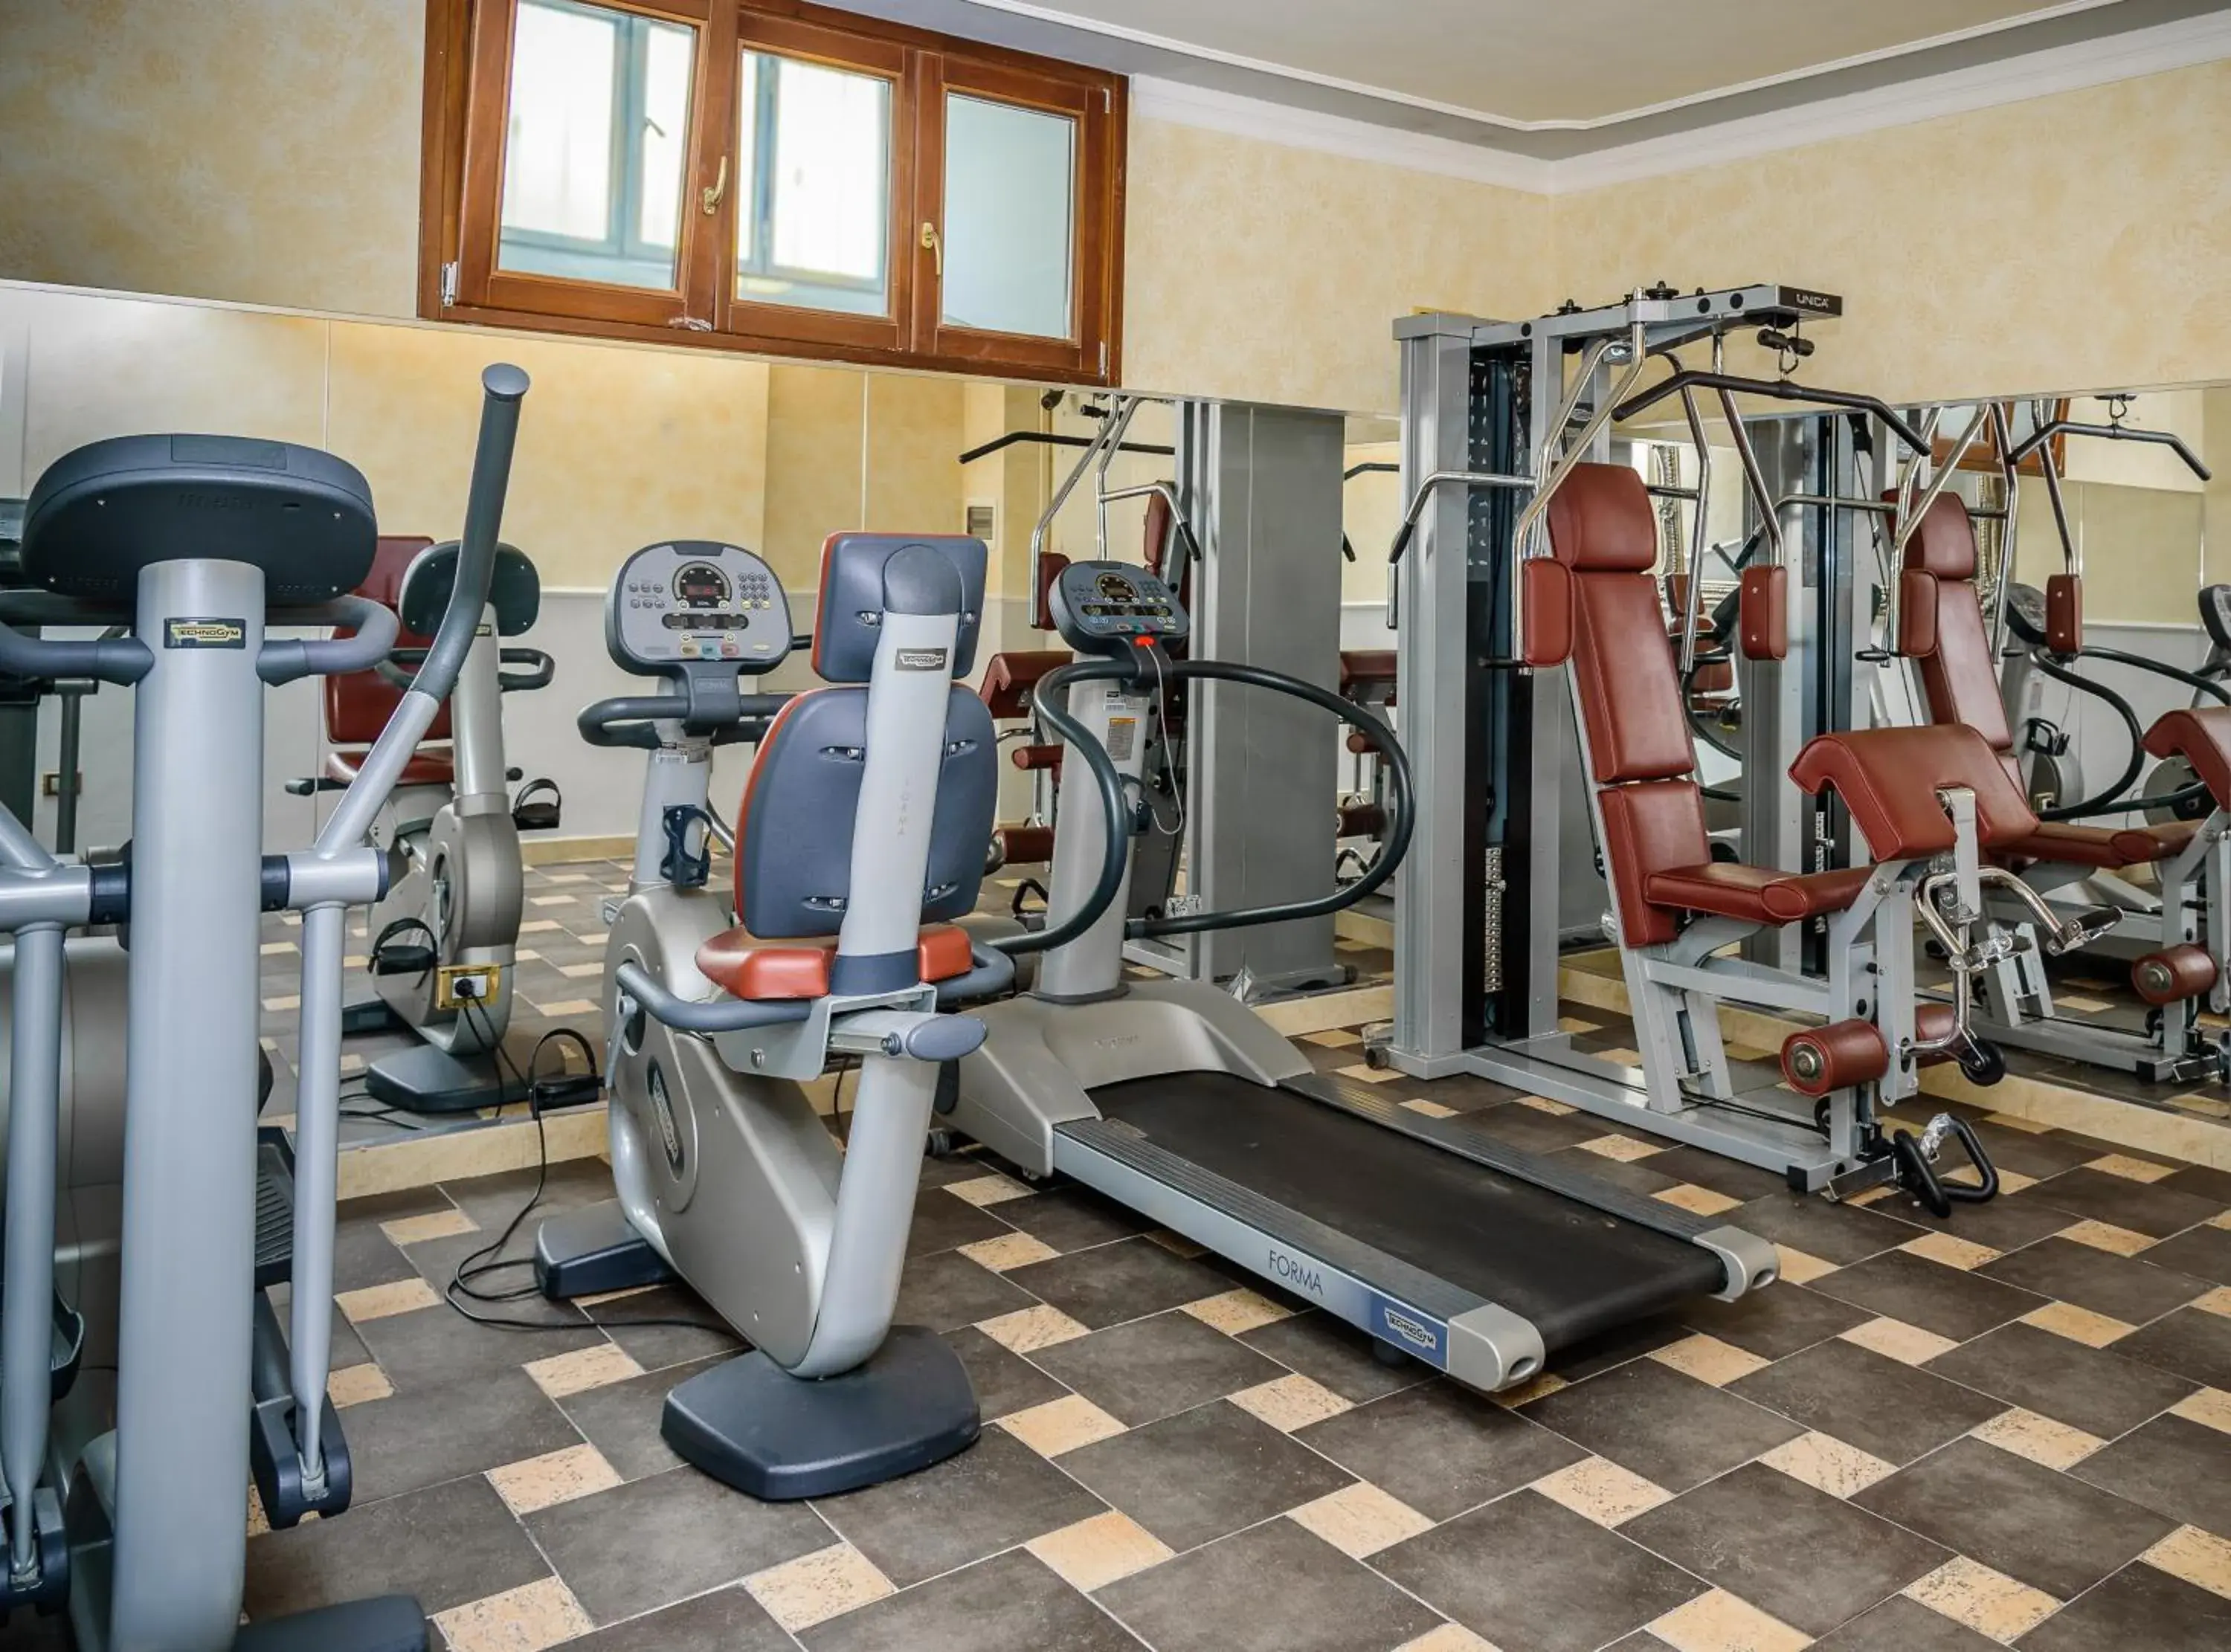 Fitness centre/facilities, Fitness Center/Facilities in Relais La Corte di Cloris